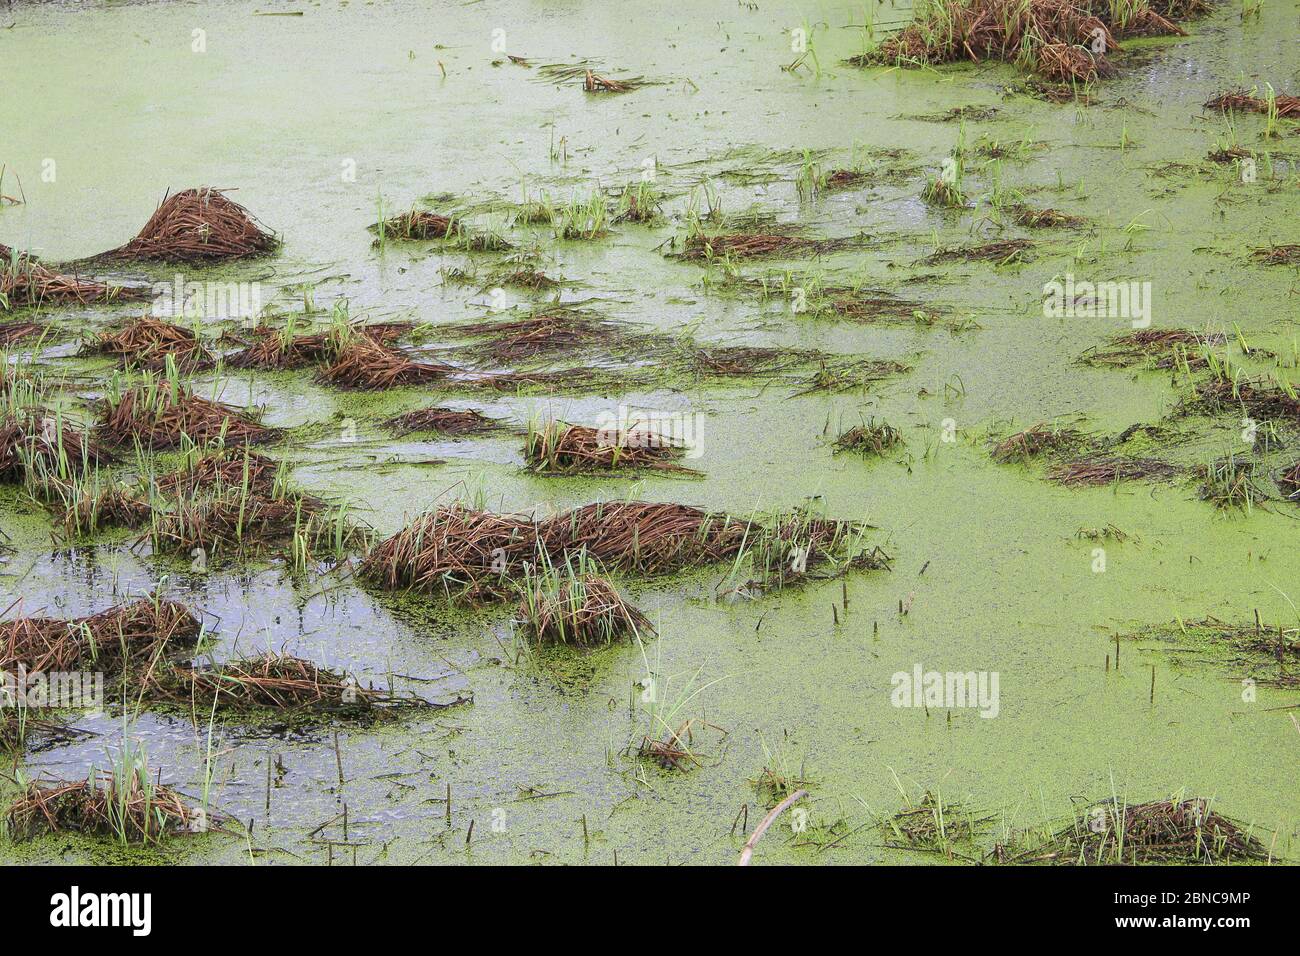 Palude con dossi, erba e fango verde. Anatre sulla superficie dell'acqua. Stagno sopravcrescita. Carote con rane. Pericoloso bog bagnato. Foto Stock